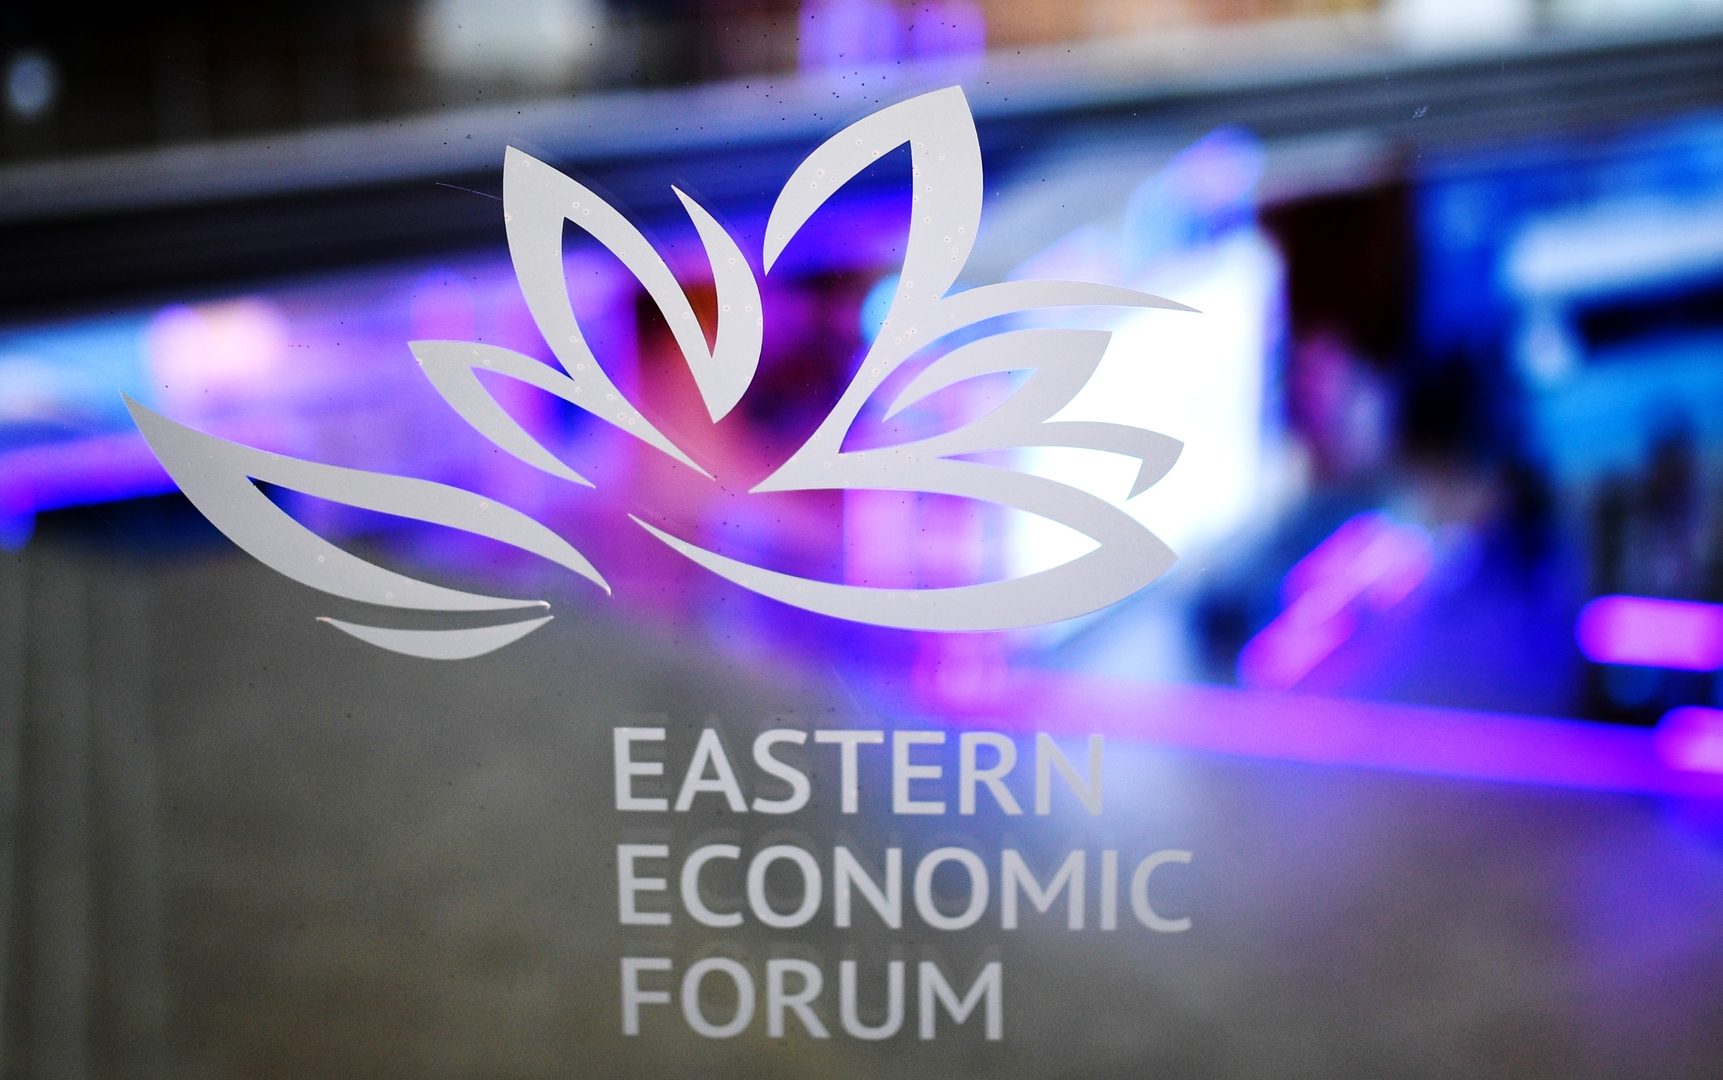 أكثر من 60 دولة مشاركة.. انطلاق منتدى الشرق الاقتصادي في روسيا